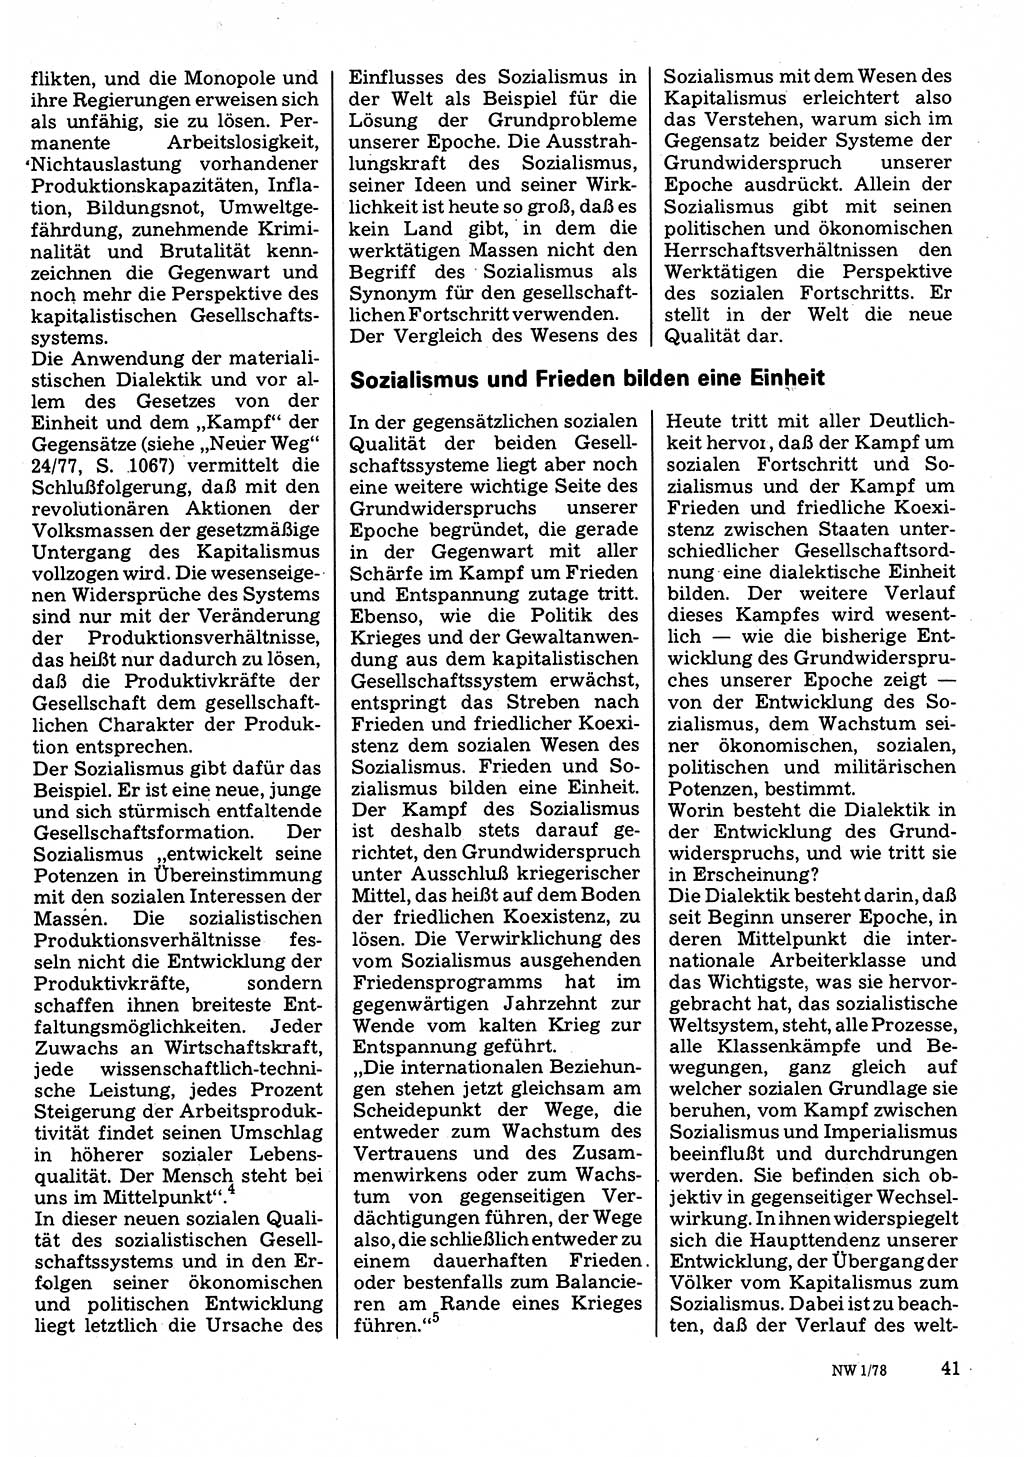 Neuer Weg (NW), Organ des Zentralkomitees (ZK) der SED (Sozialistische Einheitspartei Deutschlands) für Fragen des Parteilebens, 33. Jahrgang [Deutsche Demokratische Republik (DDR)] 1978, Seite 41 (NW ZK SED DDR 1978, S. 41)